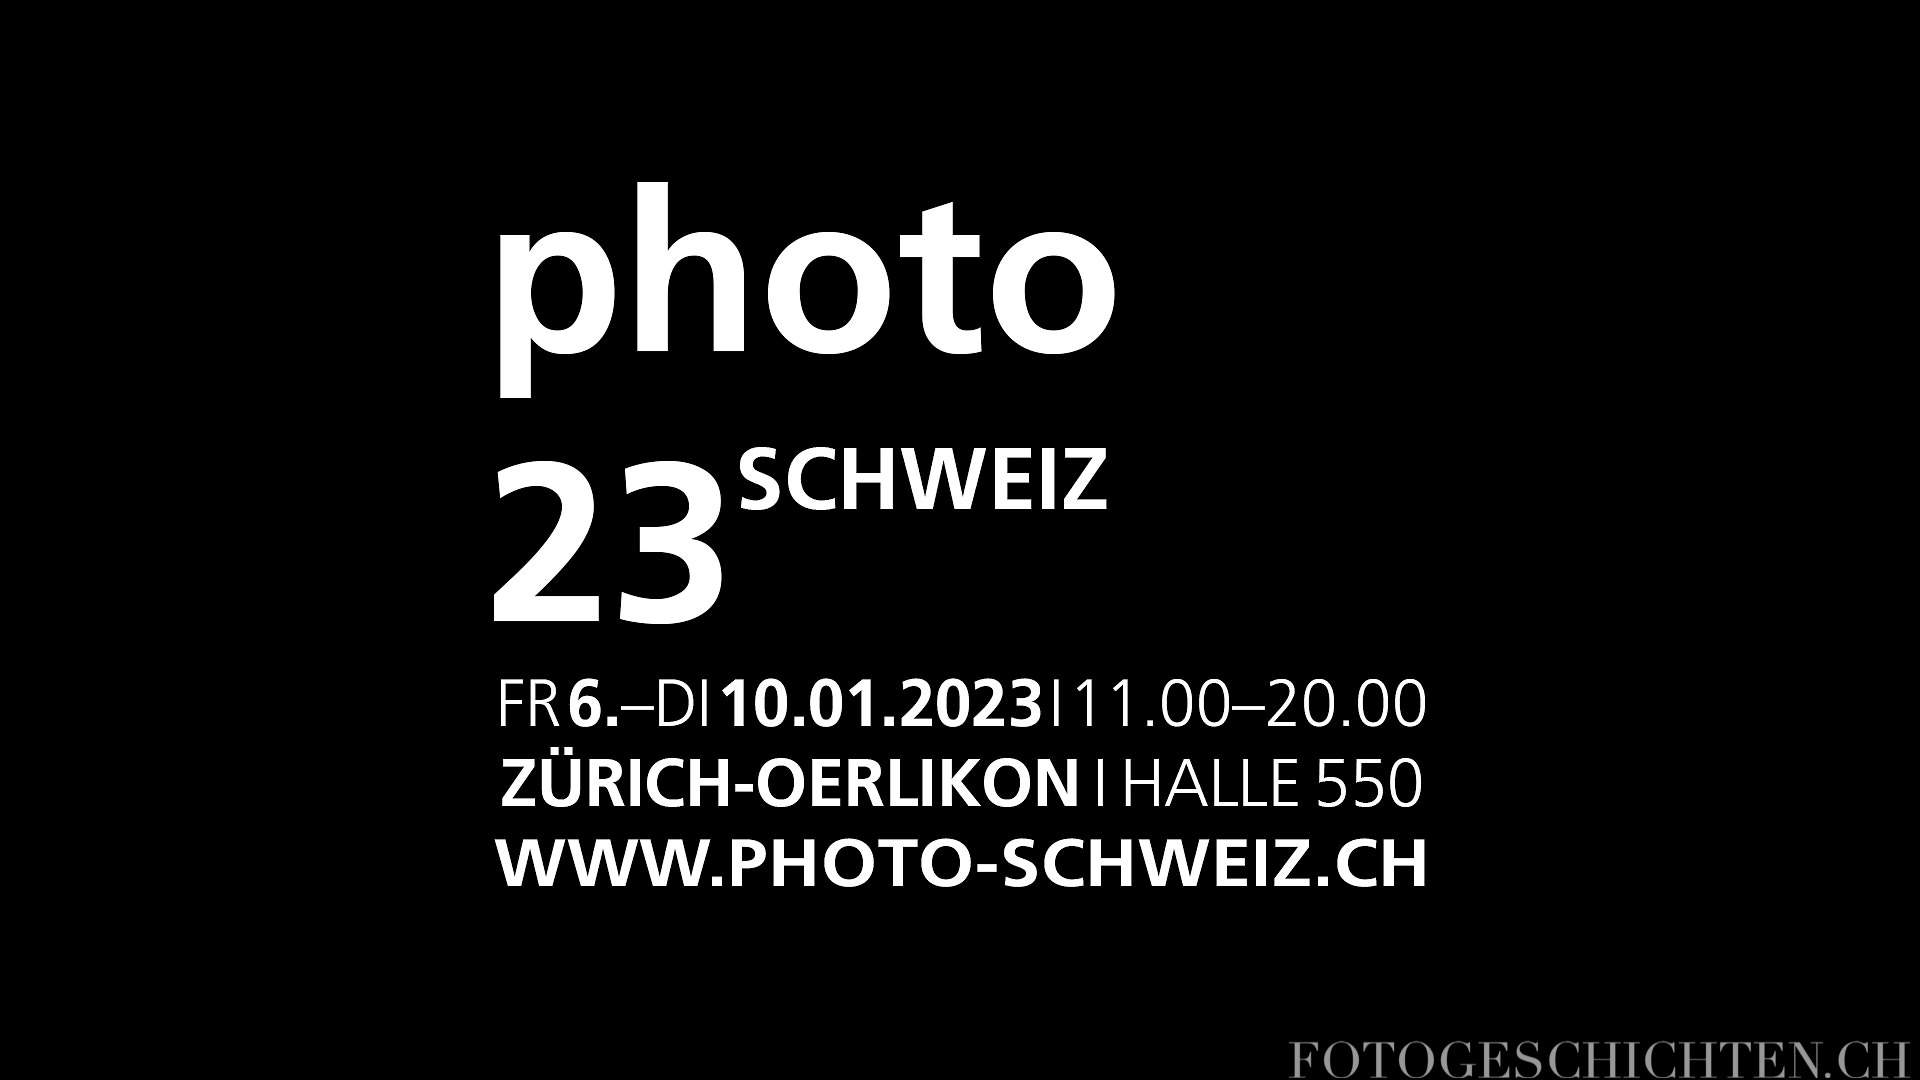 PhotoSchweiz 23